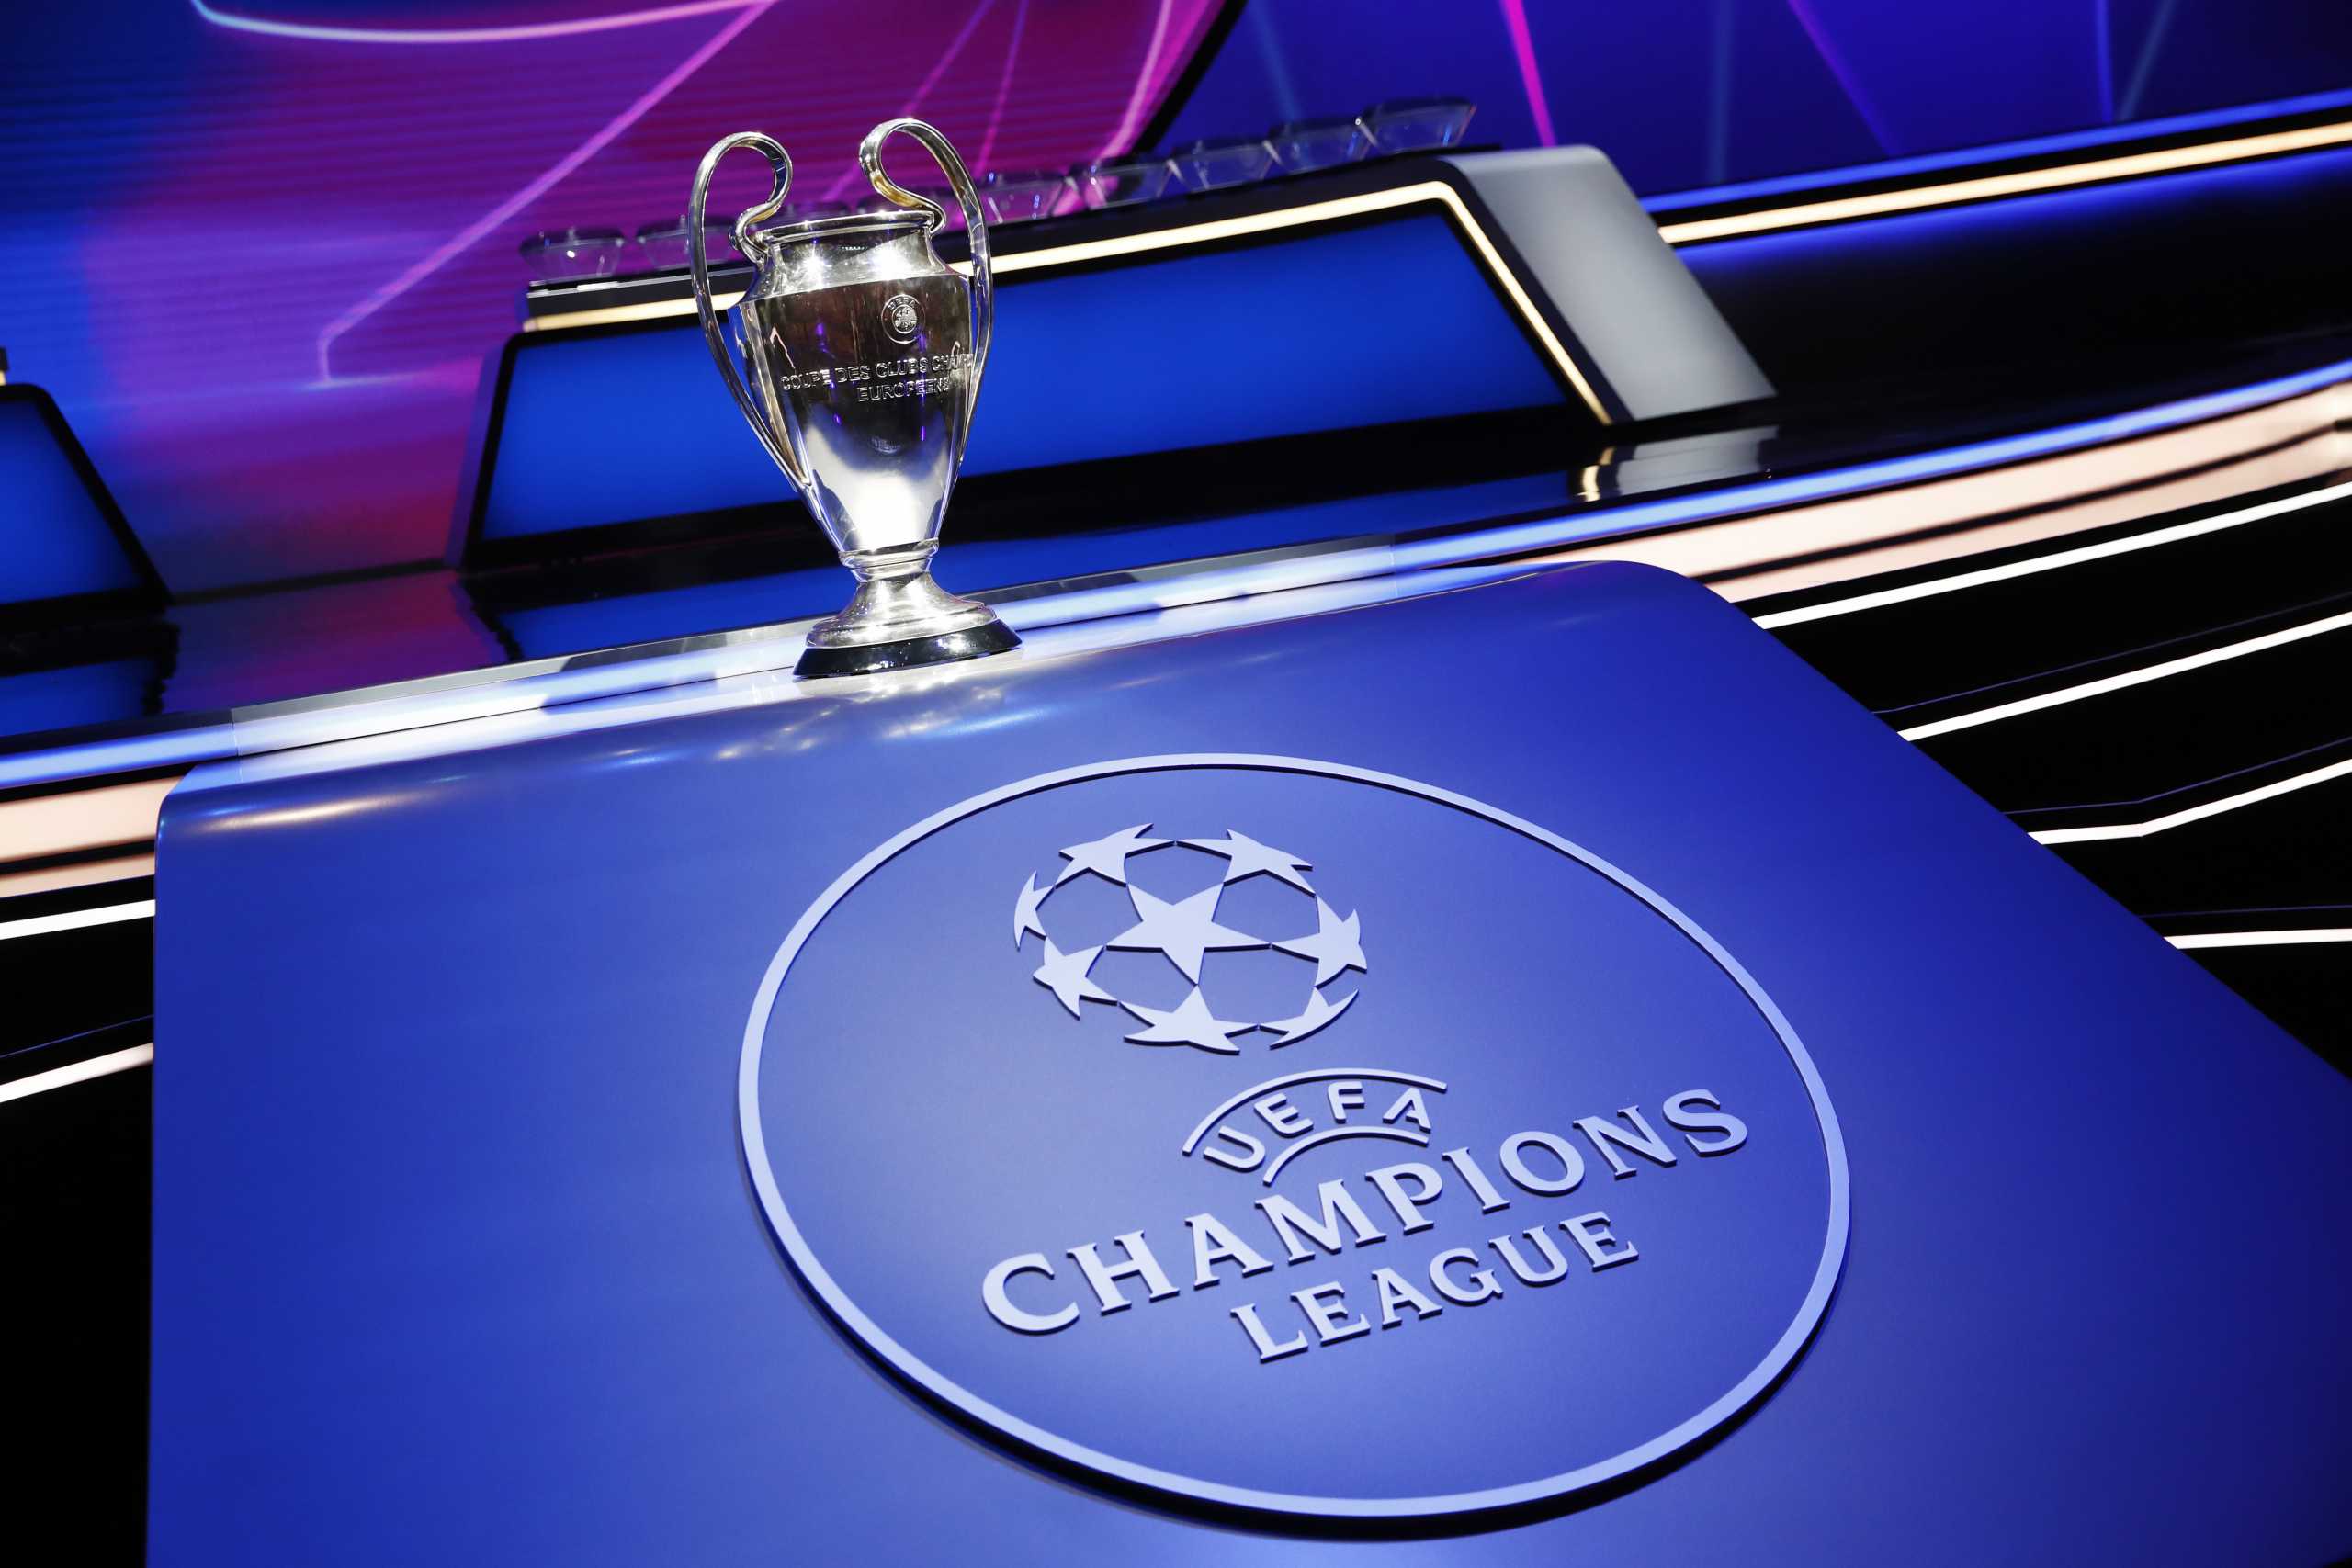 ΟΠΑΠ: Το Champions League έρχεται με τις καλύτερες αποδόσεις που προσφέρθηκαν ποτέ